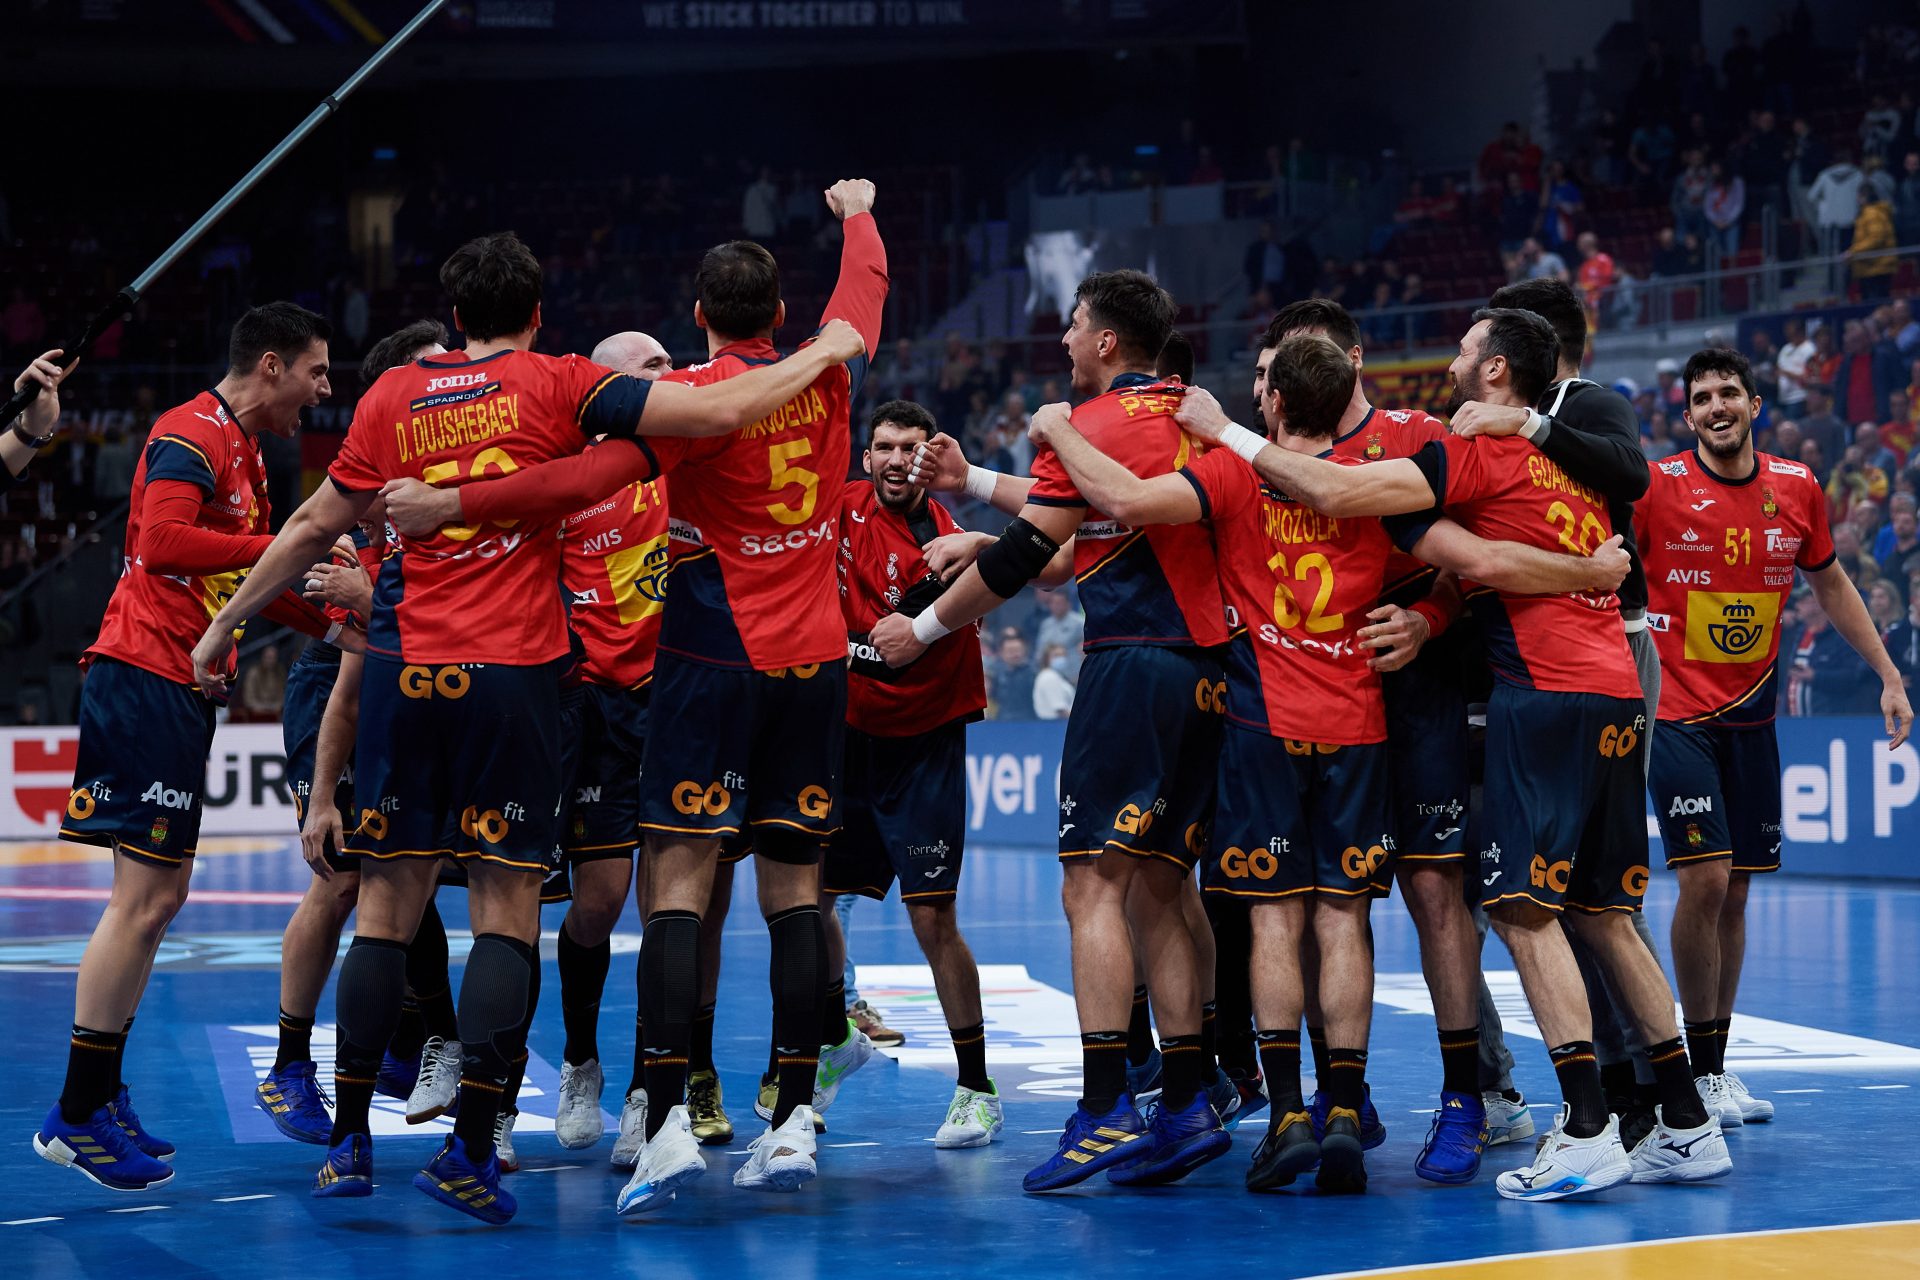 Jugadores de la selección española celebran su pase a semifinales del Campeonato Mundial de Balonmano tras ganar a Noruega.